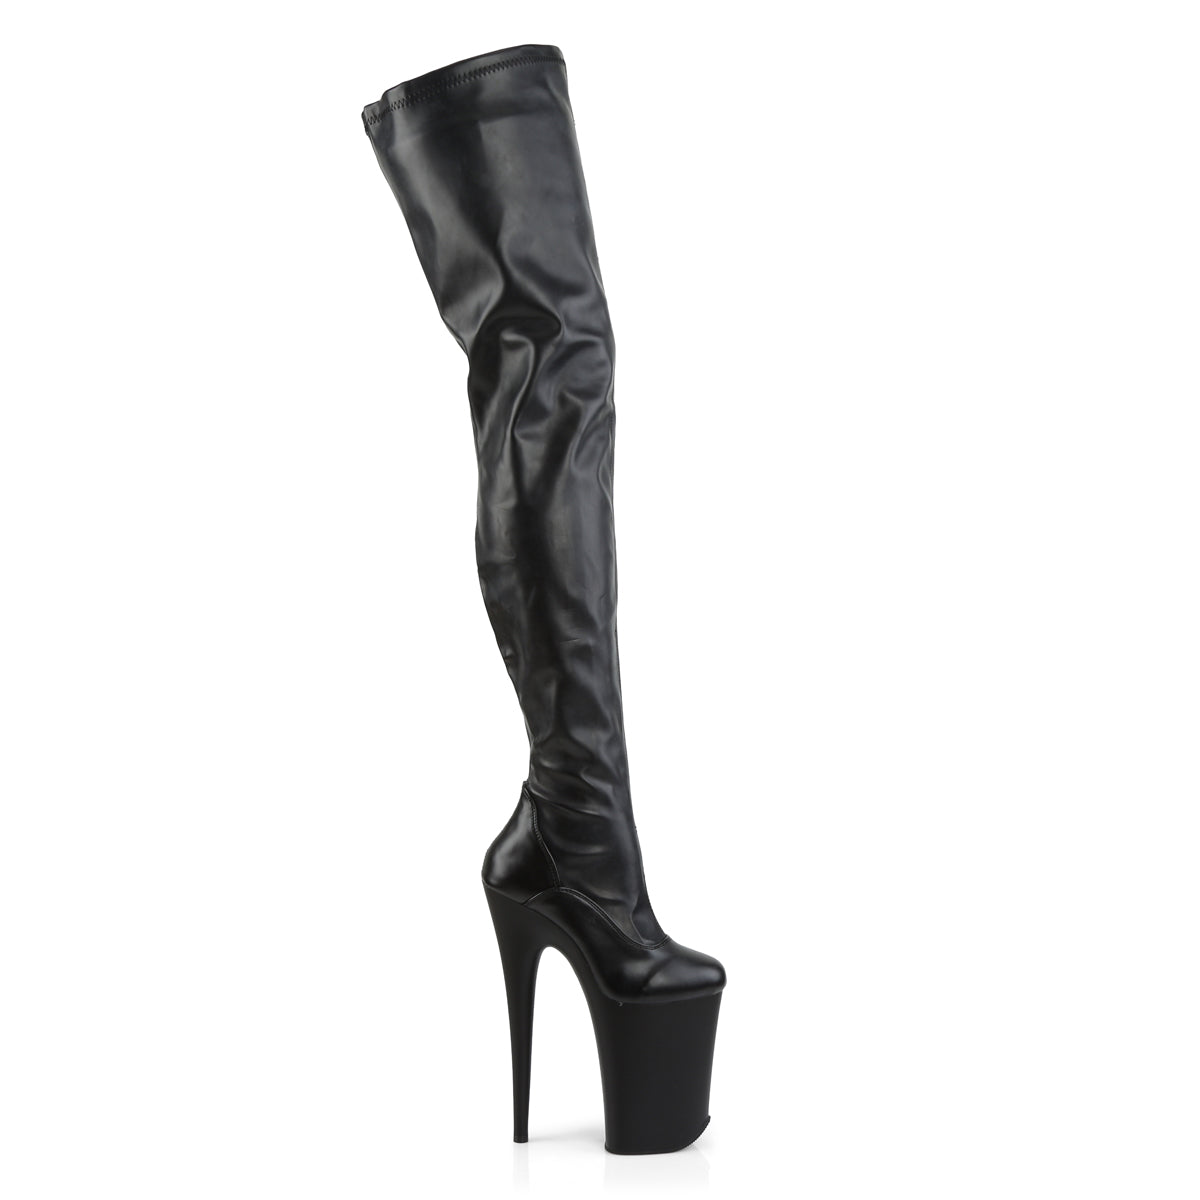 INFINITY-4000 Pleaser 9 Inch Heel Black Pole Dancer Platform-Pleaser- Sexy Shoes Fetish Heels